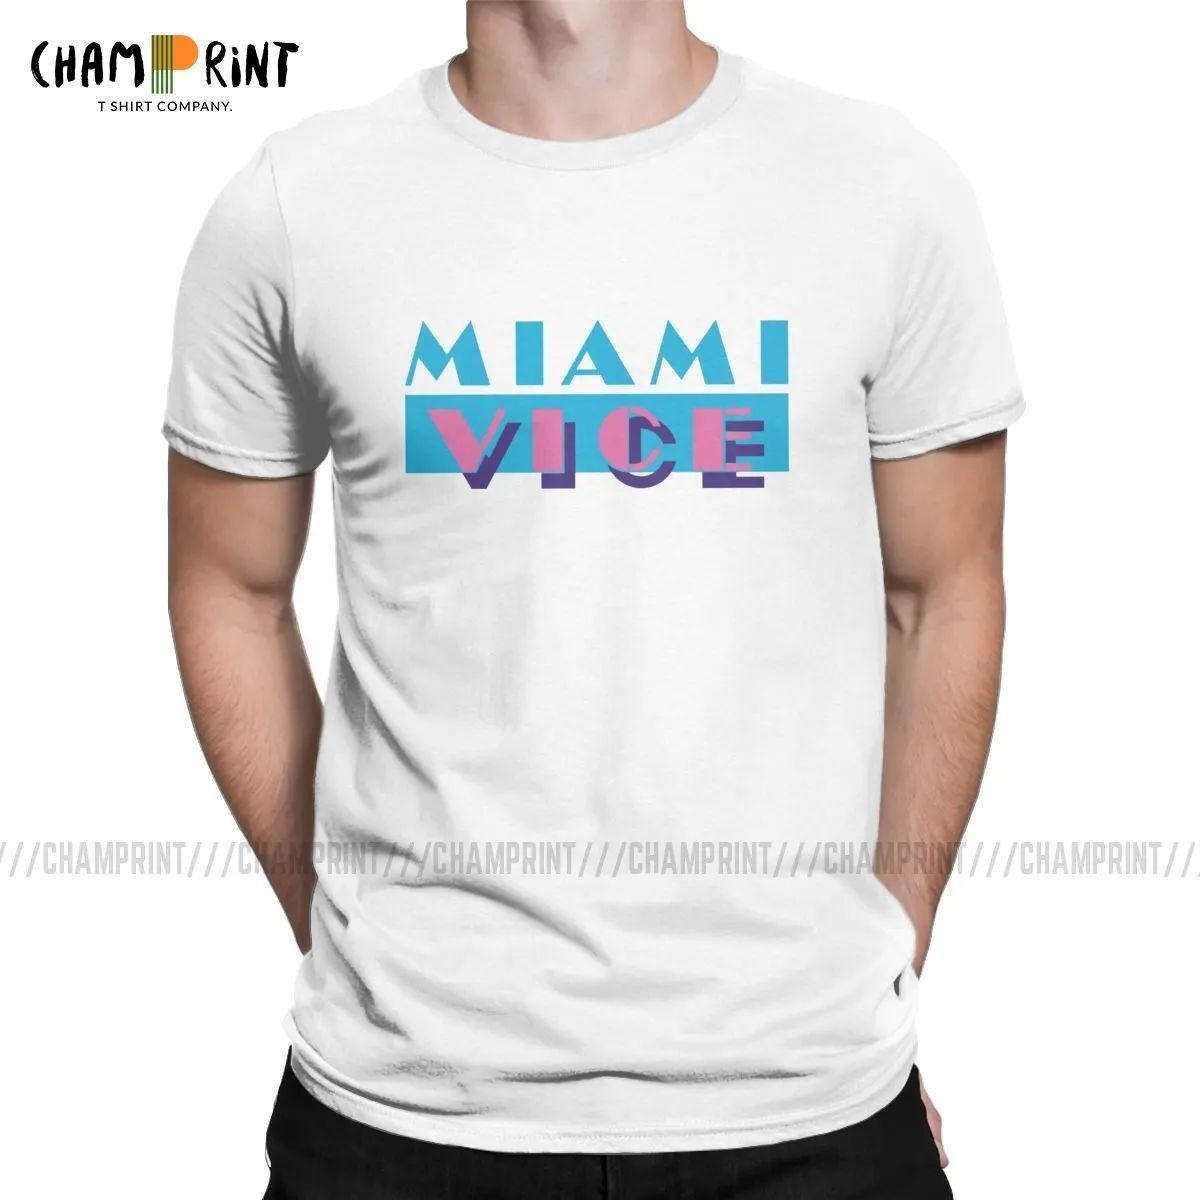 Miami vice vaporwave harajuku t shirt homens puro de algodão vintage t-shirt o pescoço camiseta manga curta tops presente idéia